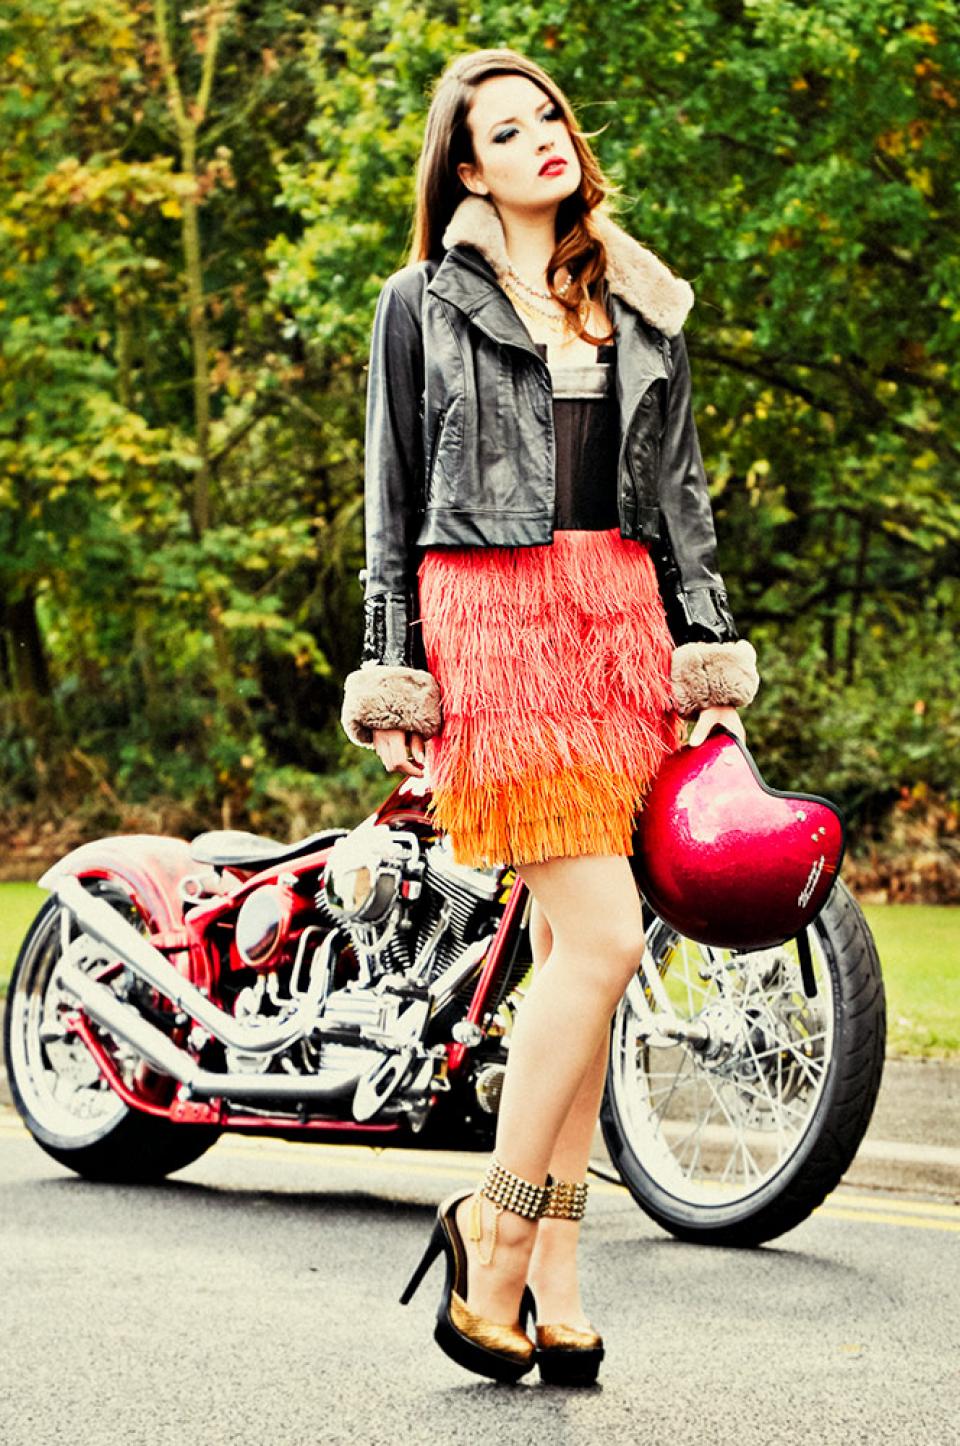 Harley Davidson Fashion Photography